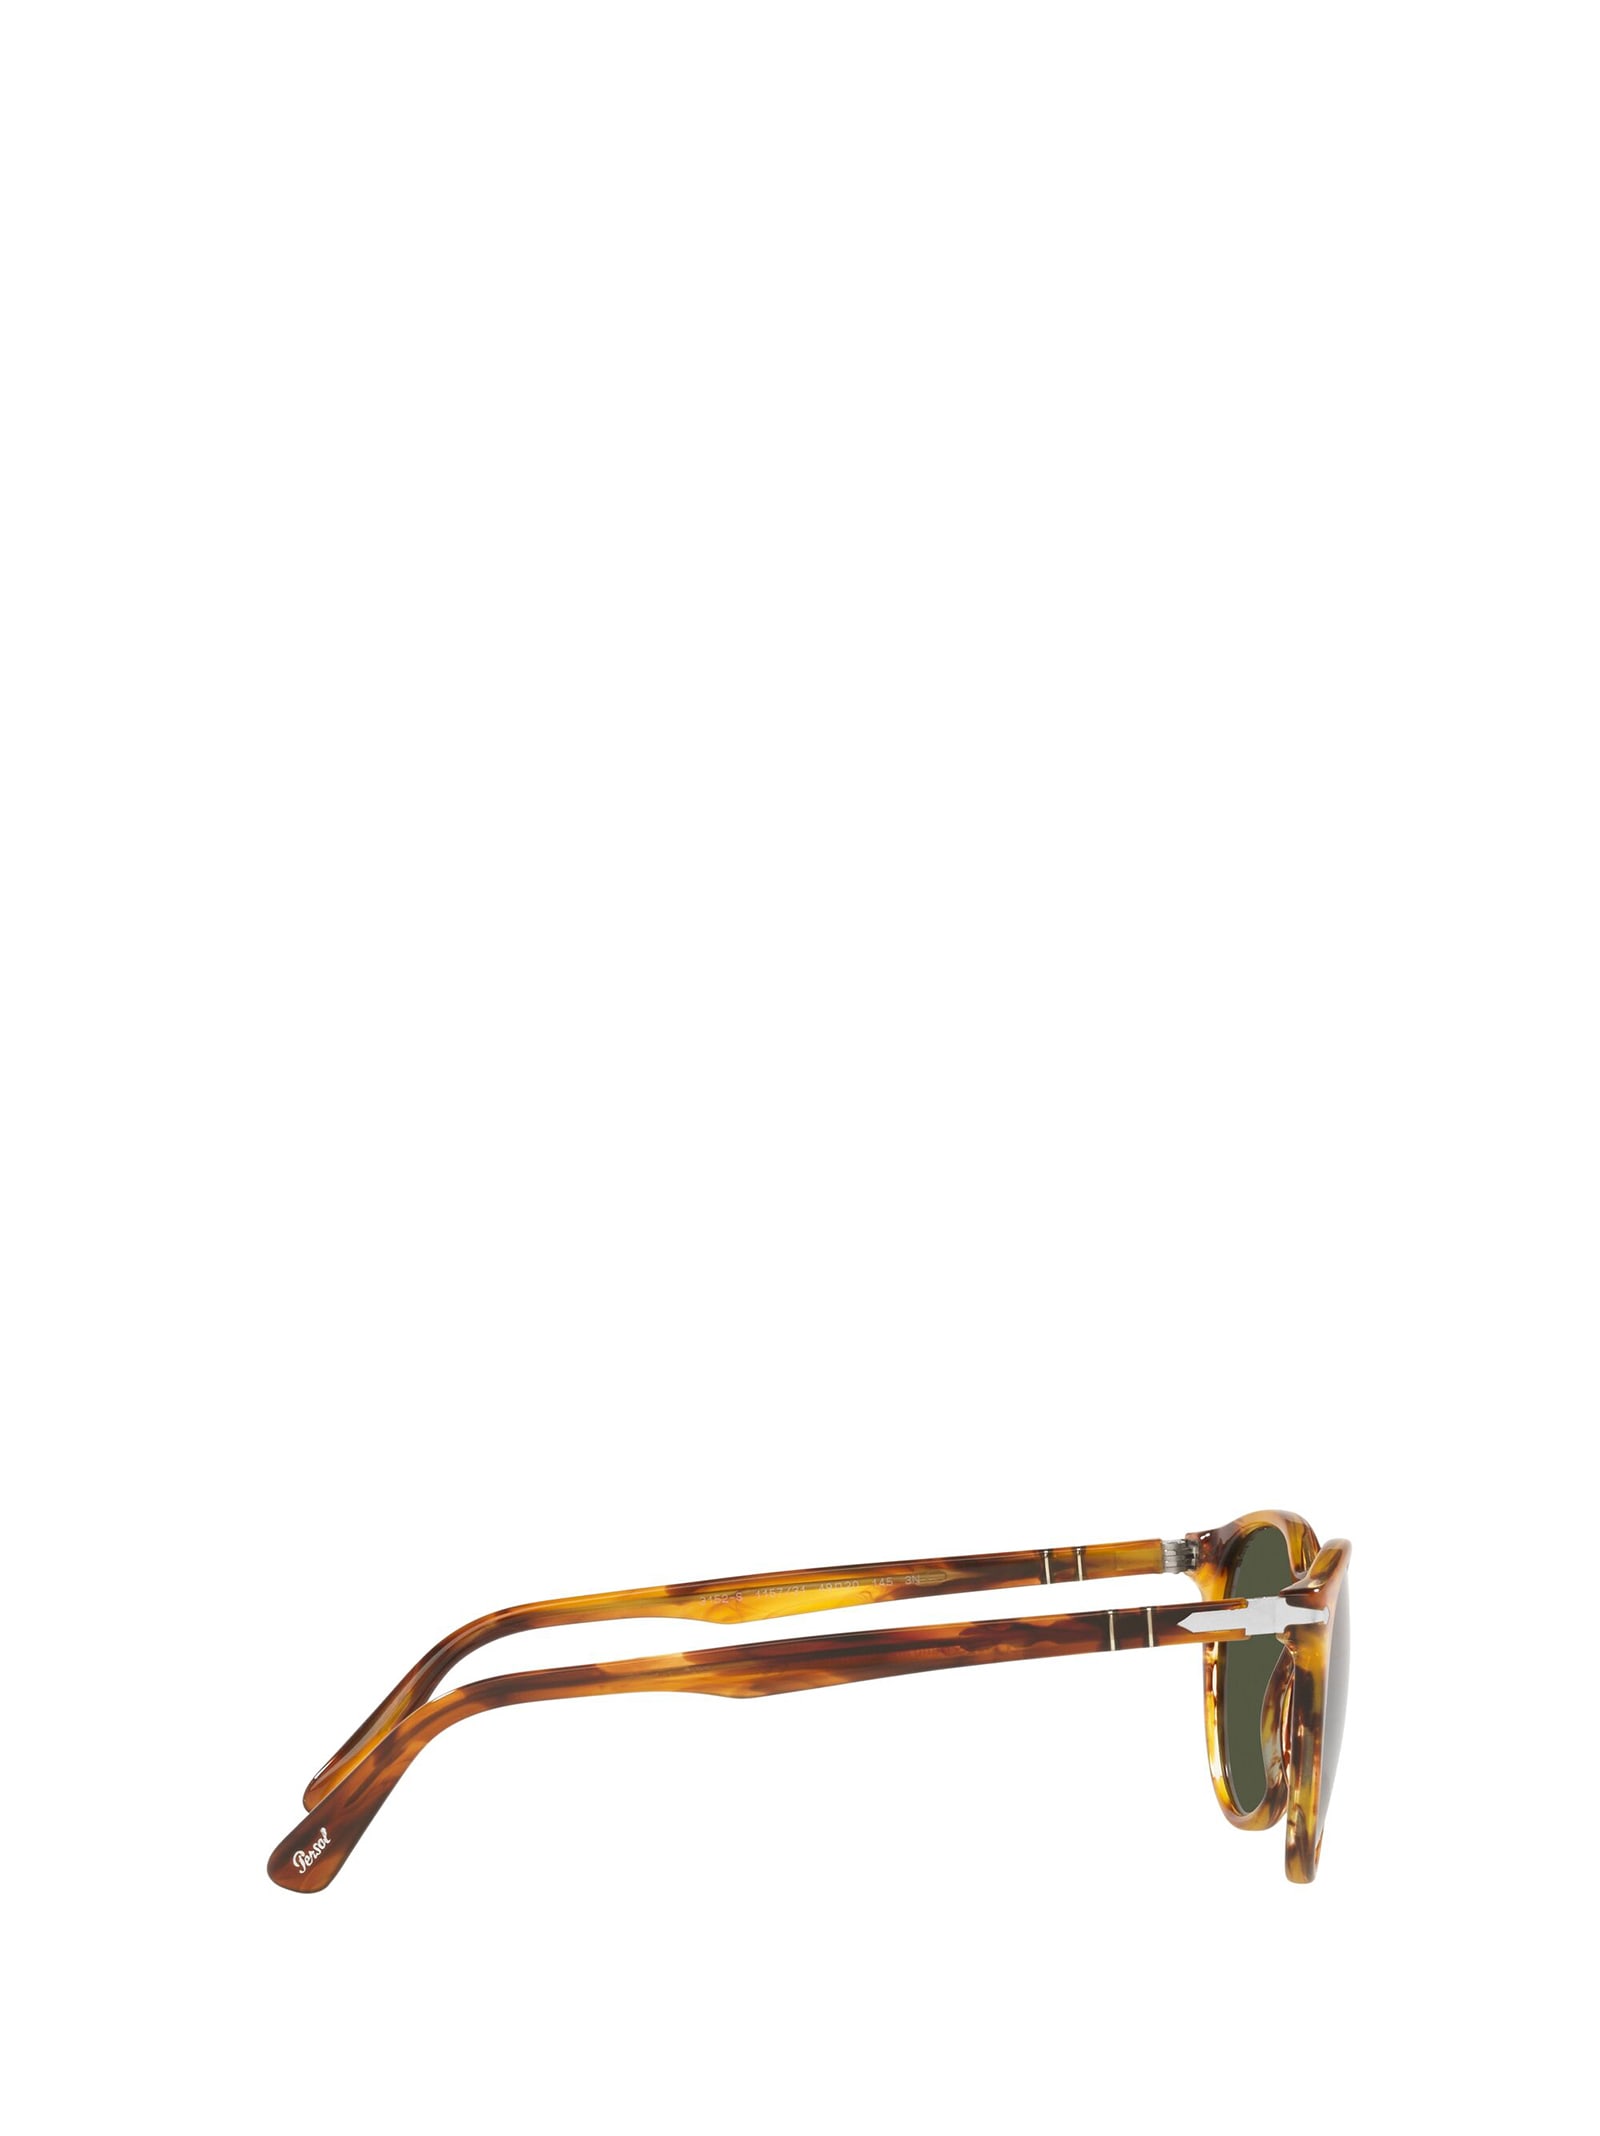 Shop Persol Po3152s Striped Brown Sunglasses